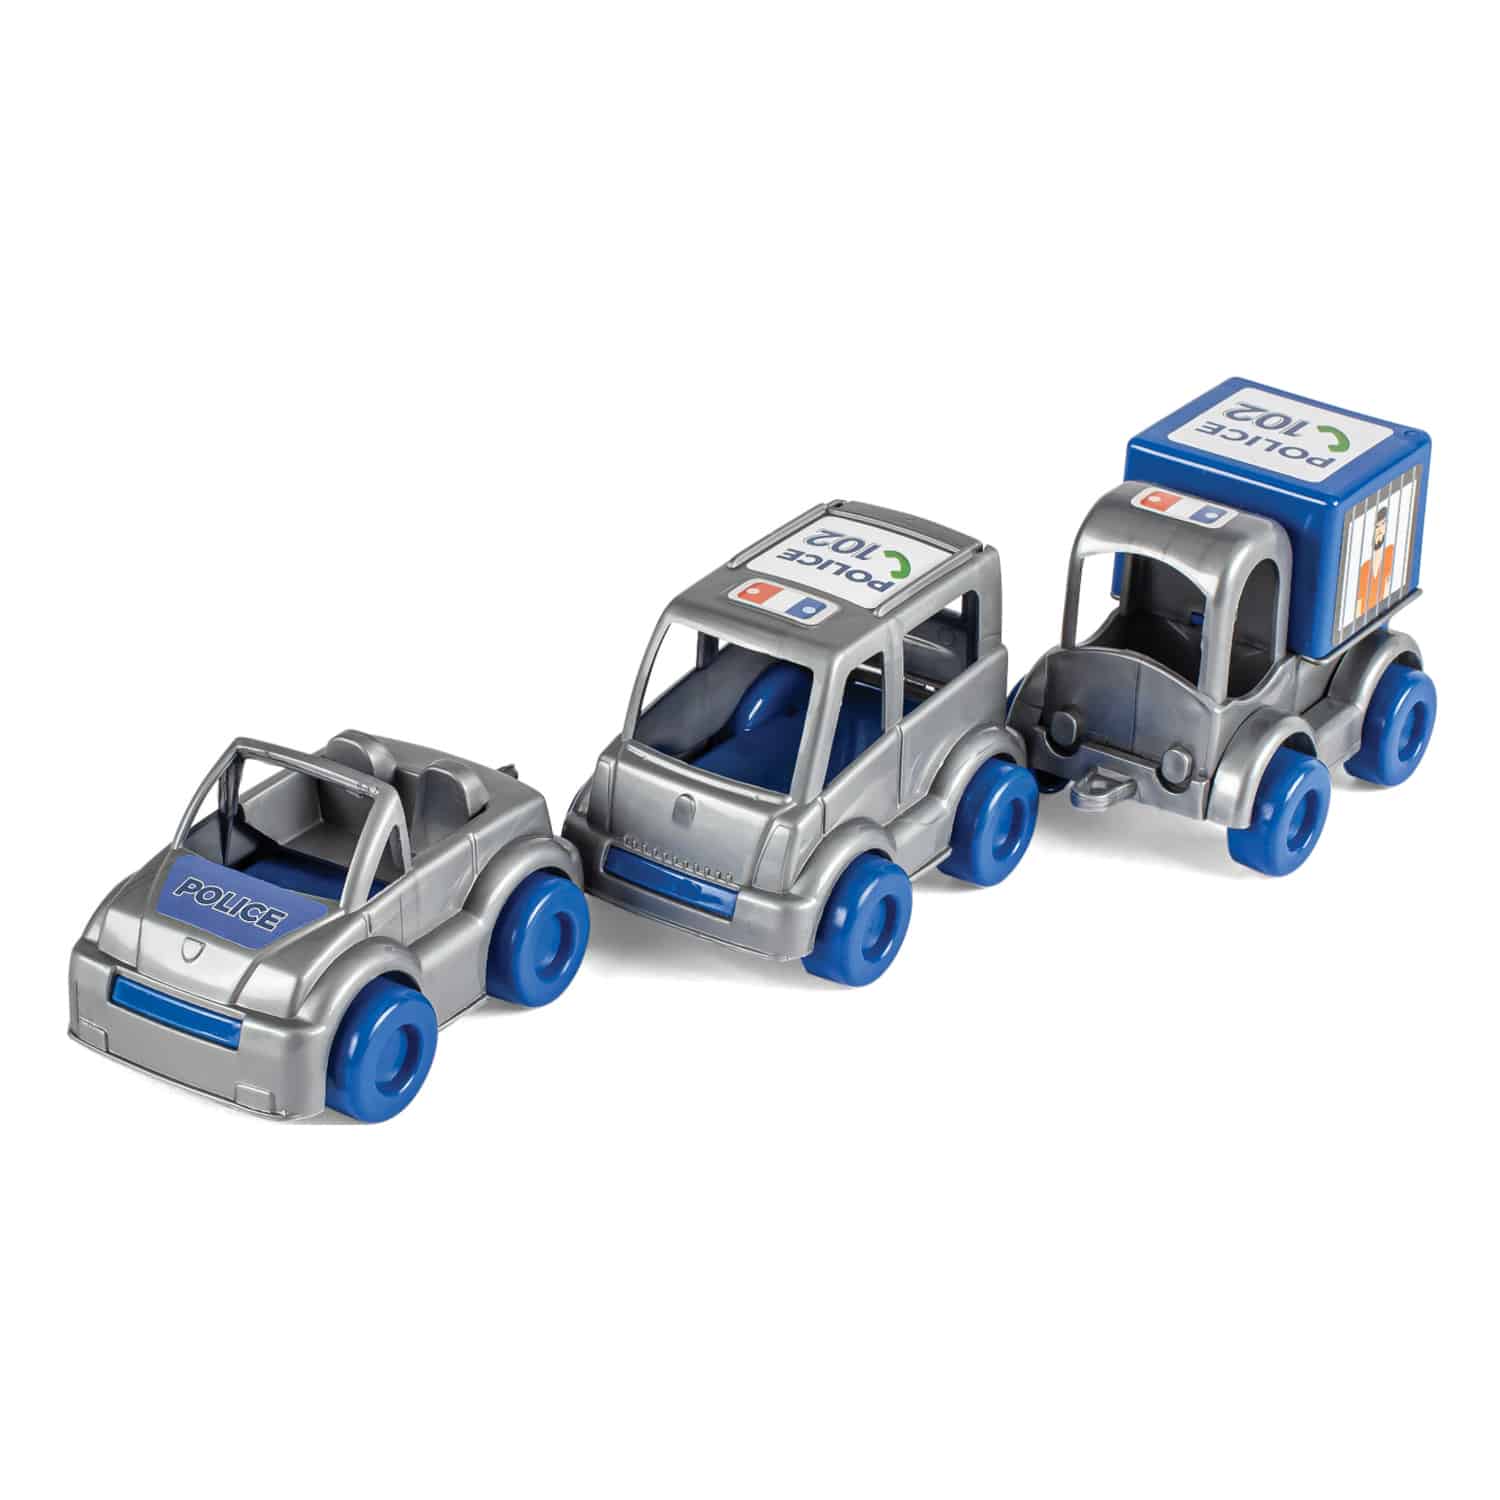 Kid Cars sets - Wader